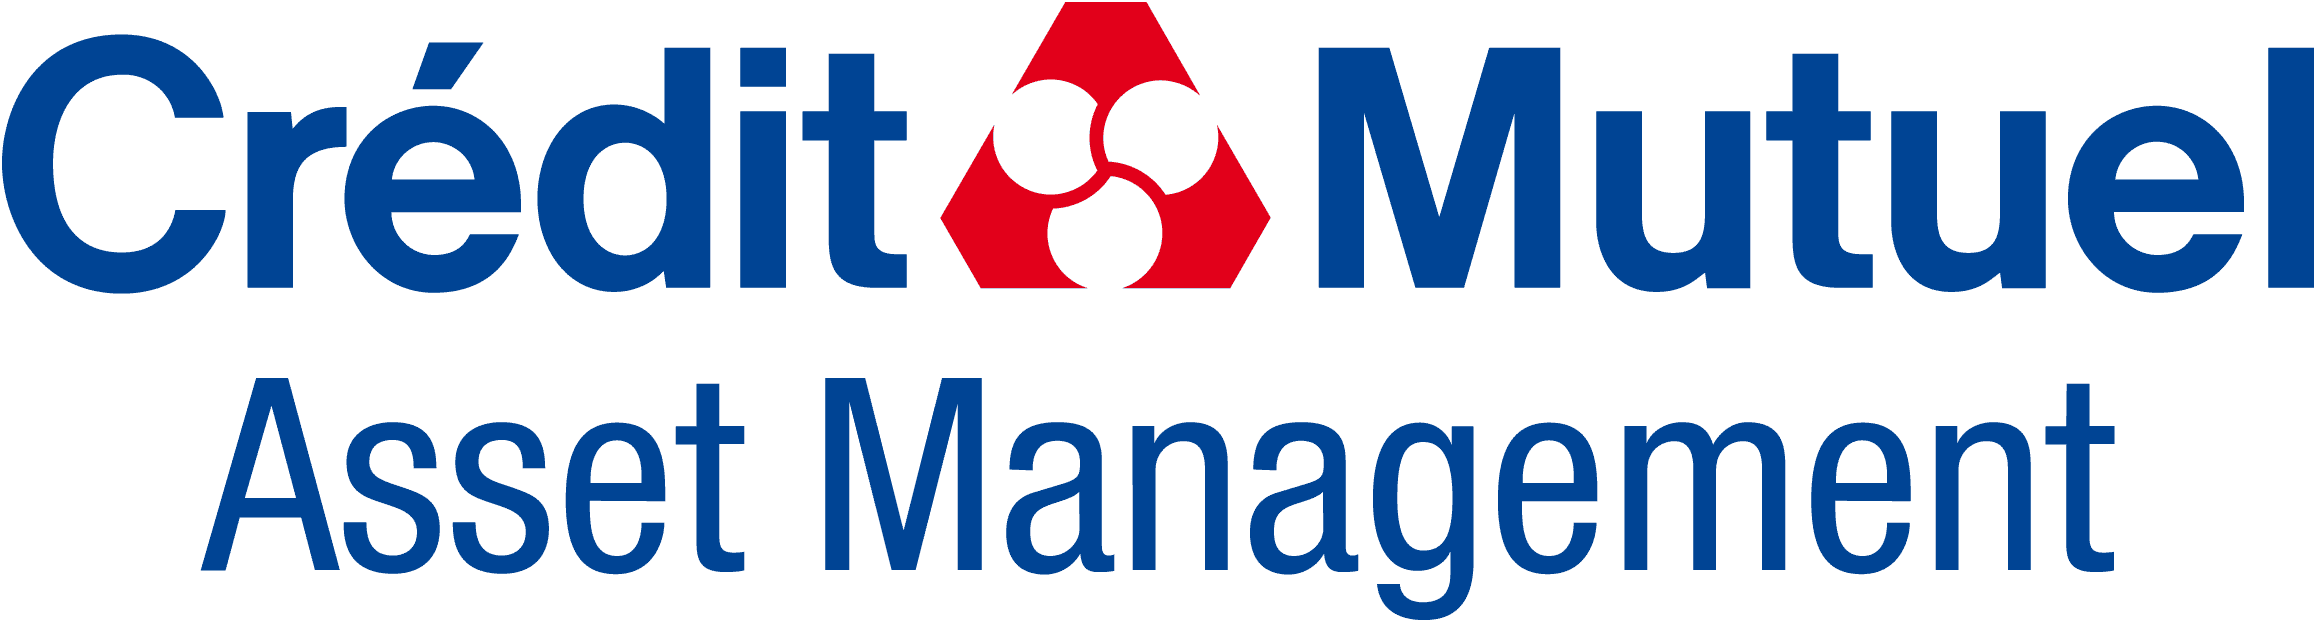 logo-credit-mutuel-asset-management